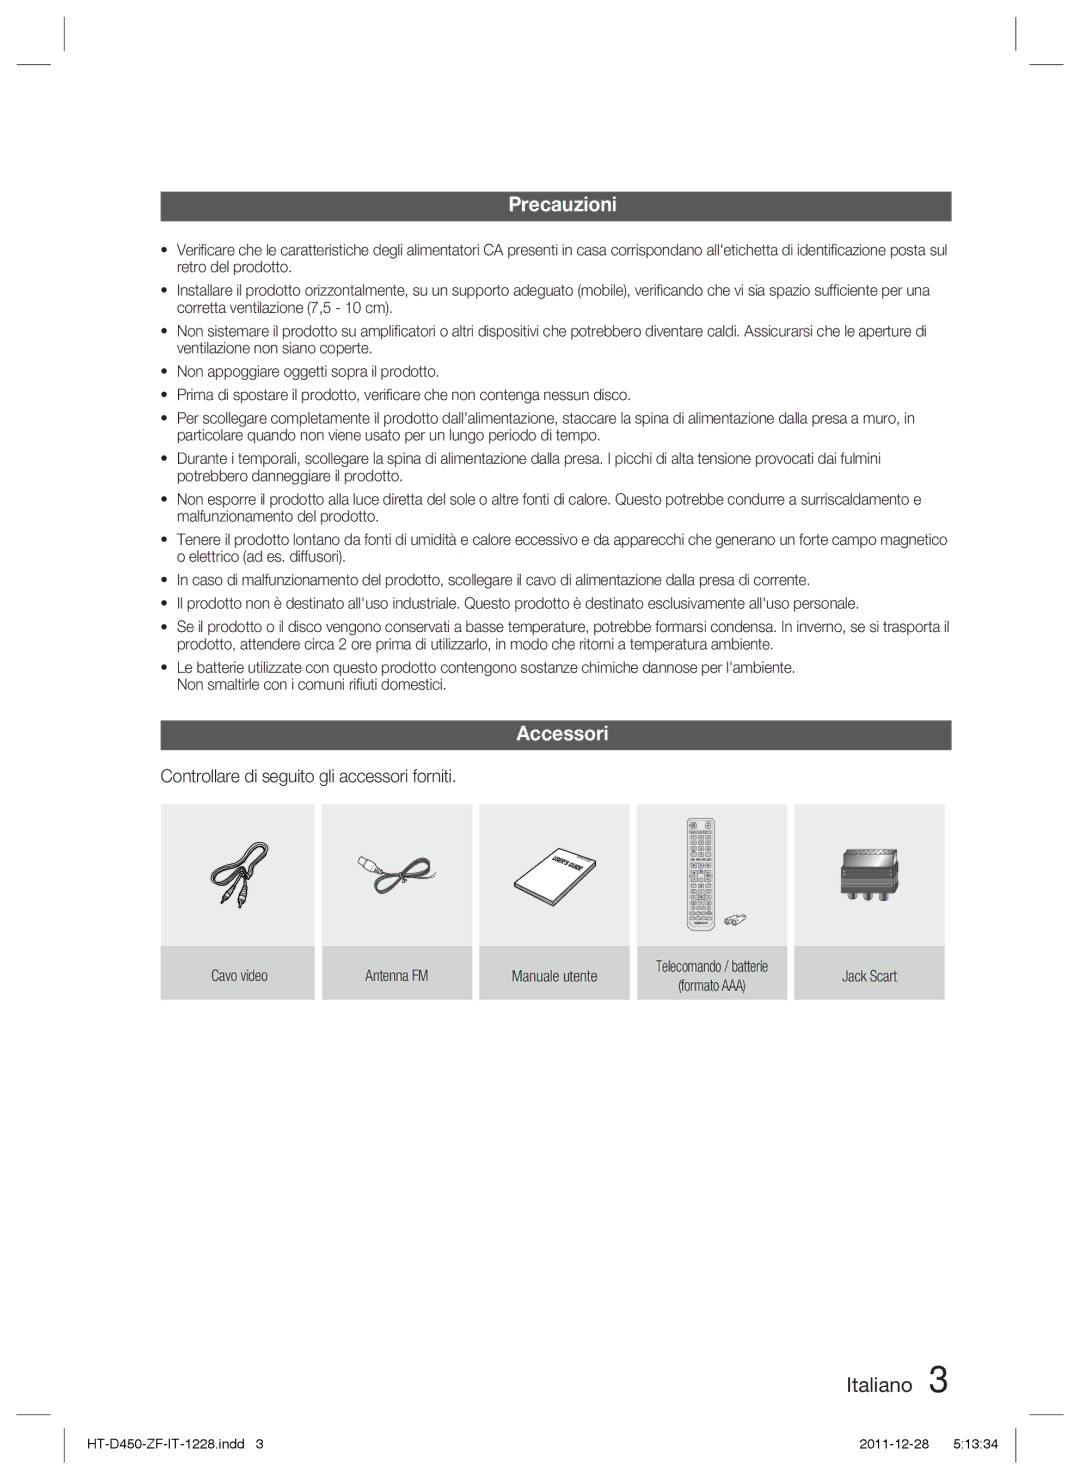 Samsung HT-D455/ZF manual Precauzioni, Accessori, Controllare di seguito gli accessori forniti 